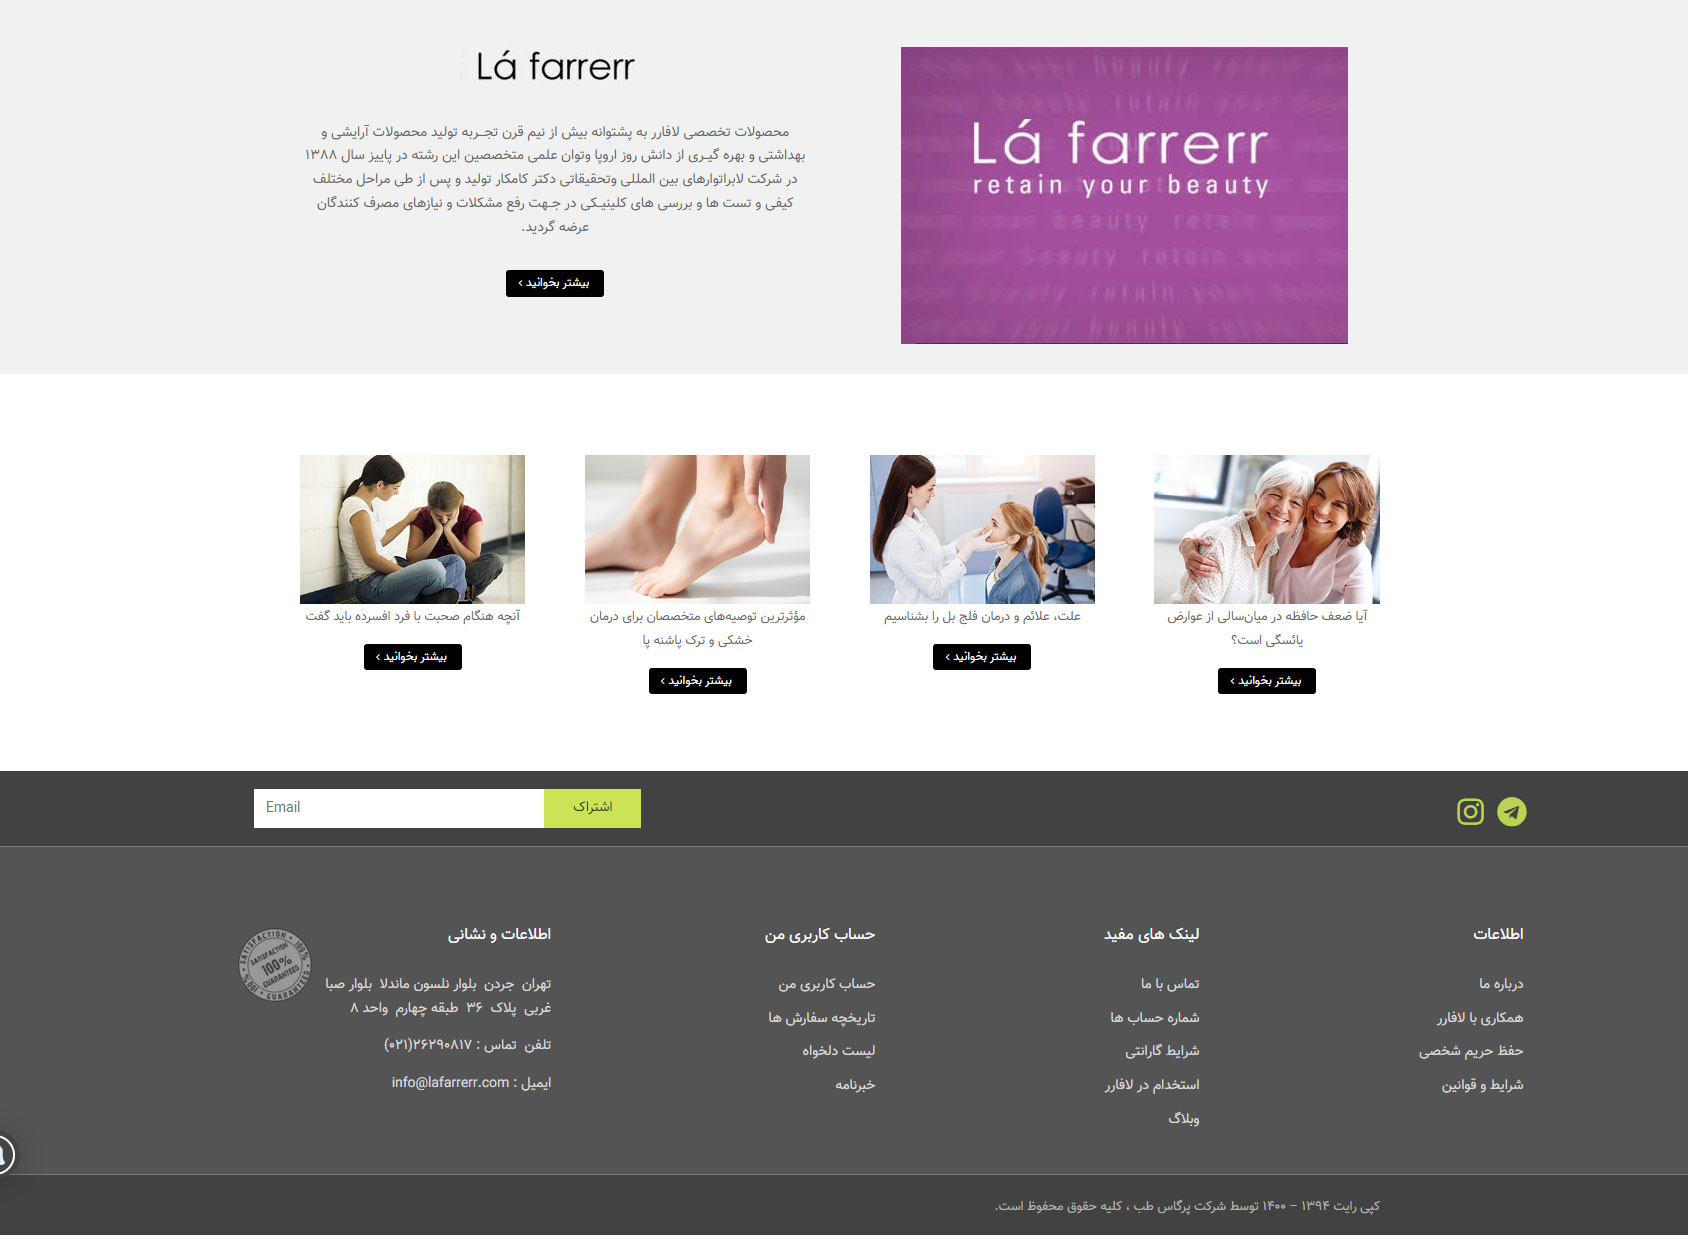 طراحی سایت فروشگاه اینترنتی لافارر lafarrer